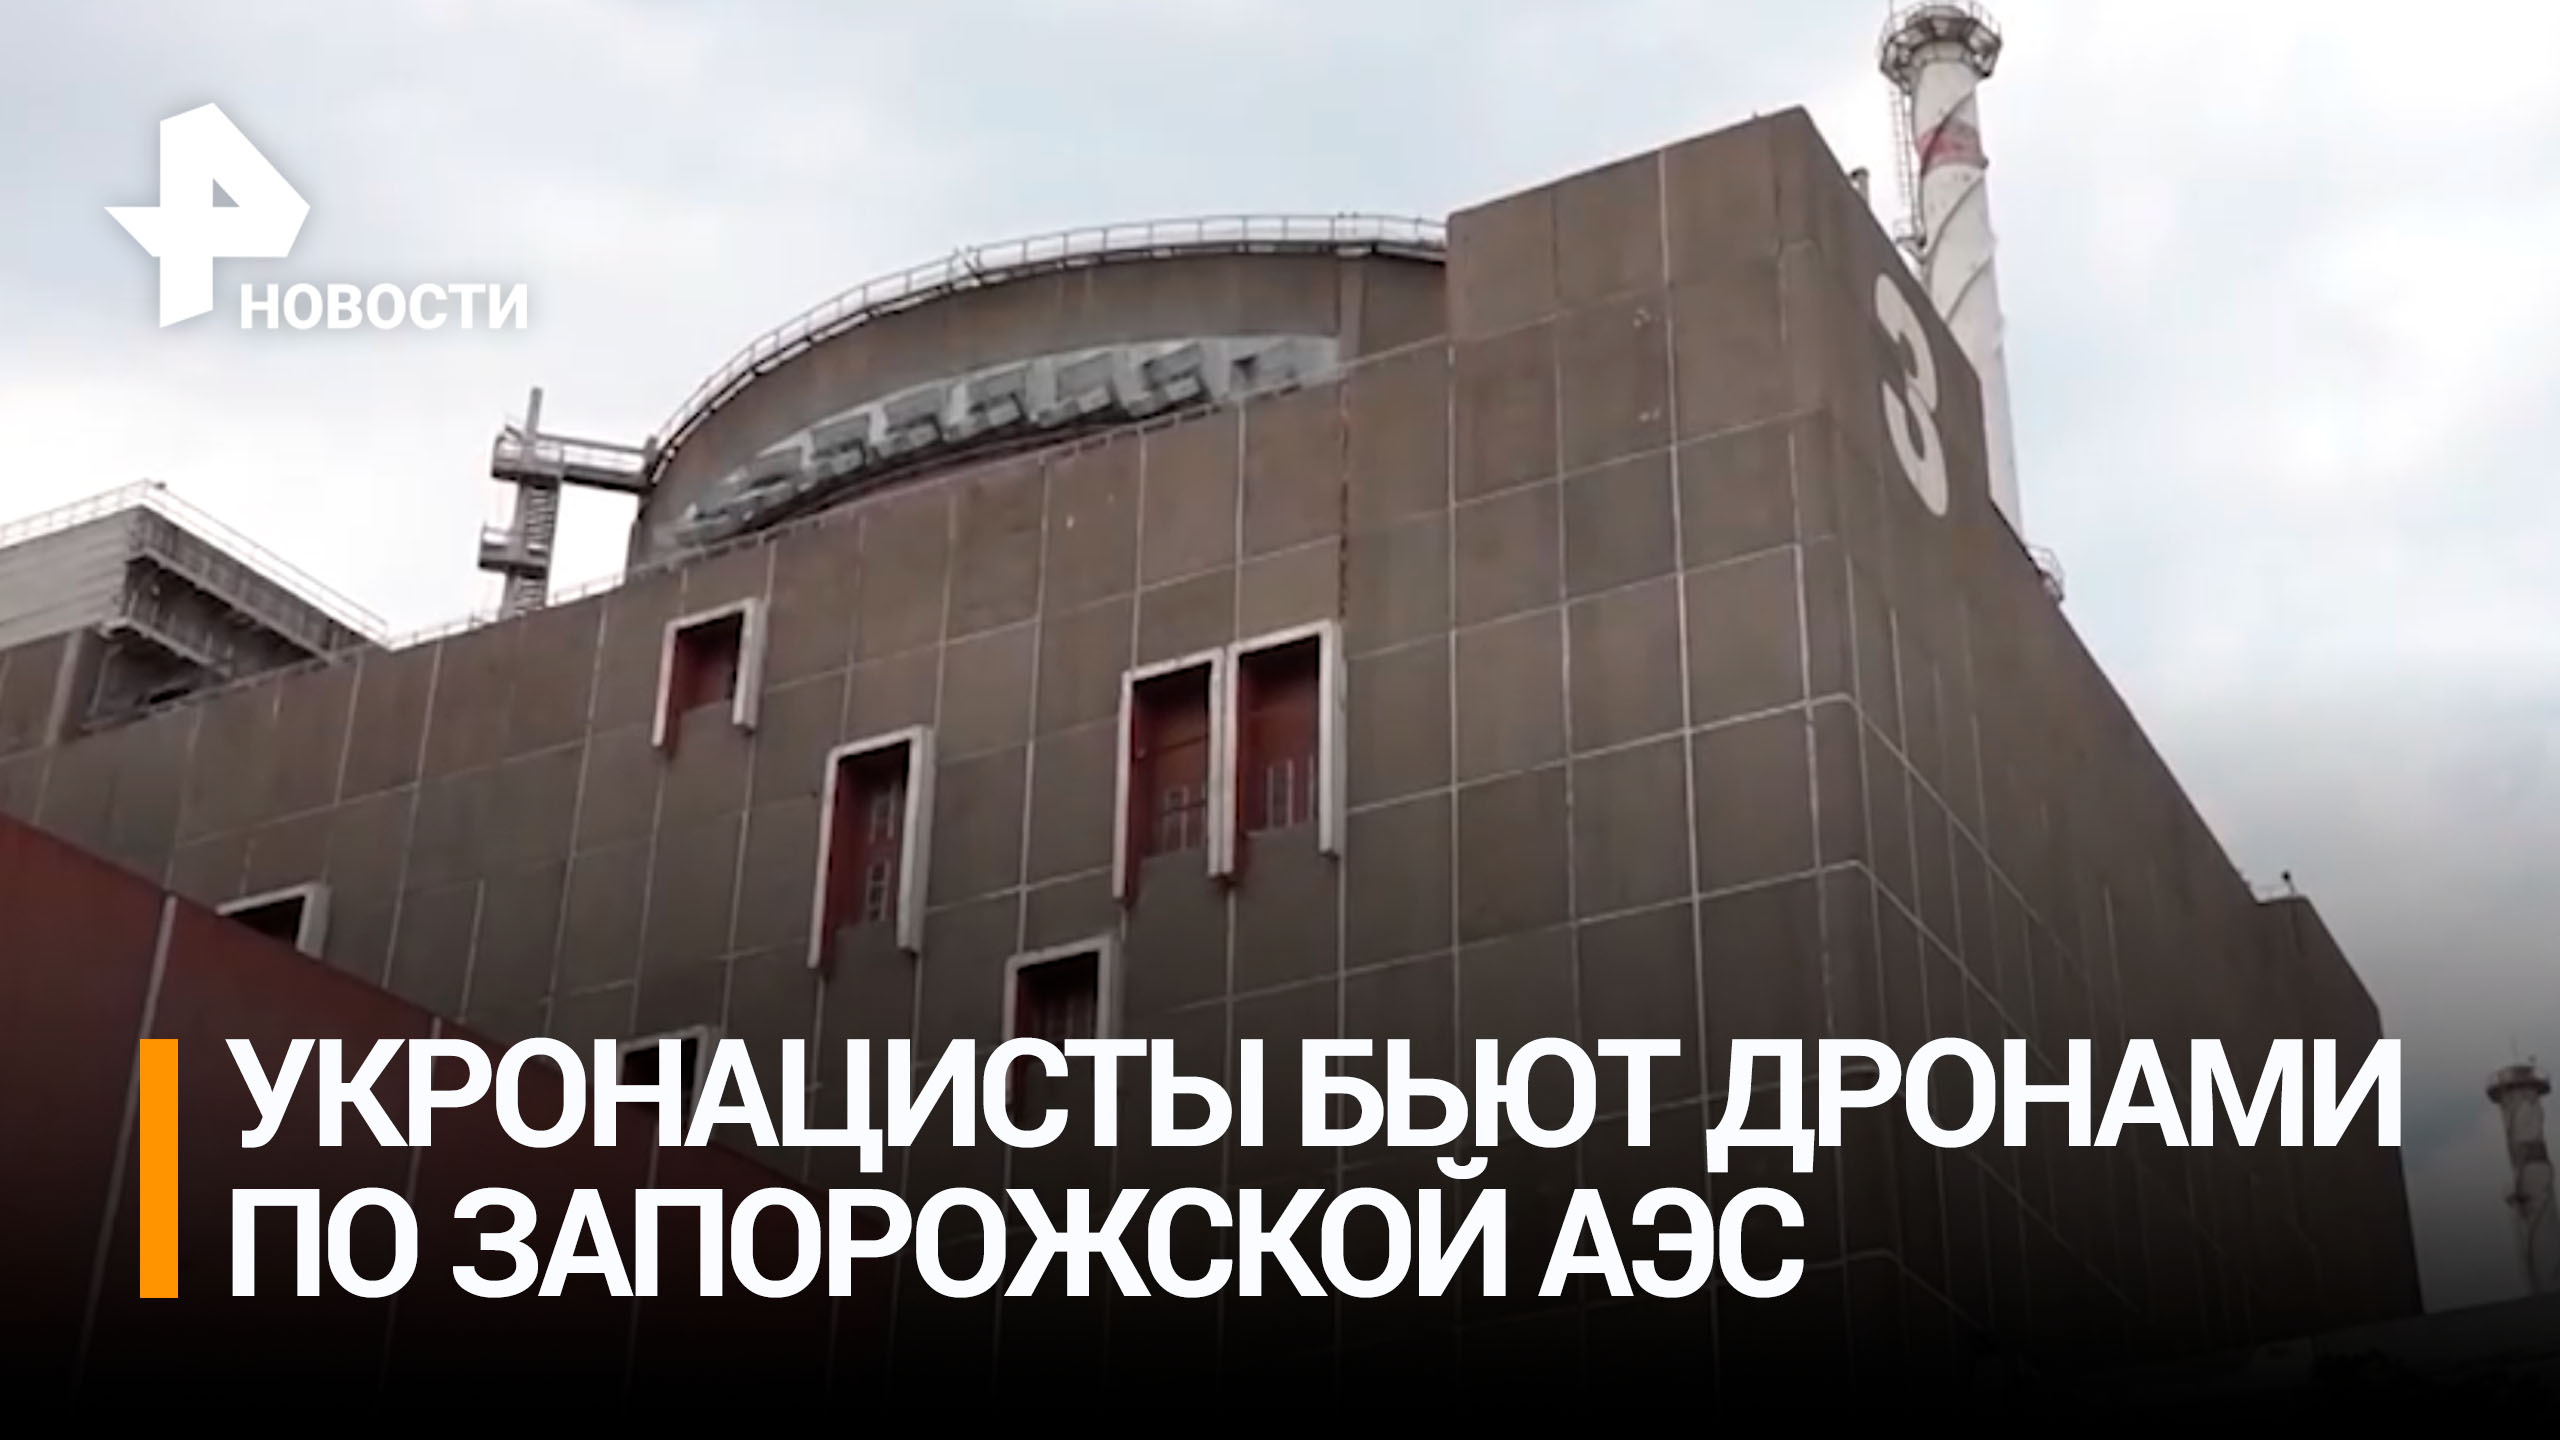 ВСУ атаковали Запорожскую АЭС, сбросив взрывчатку вблизи топливохранилища / РЕН Новости